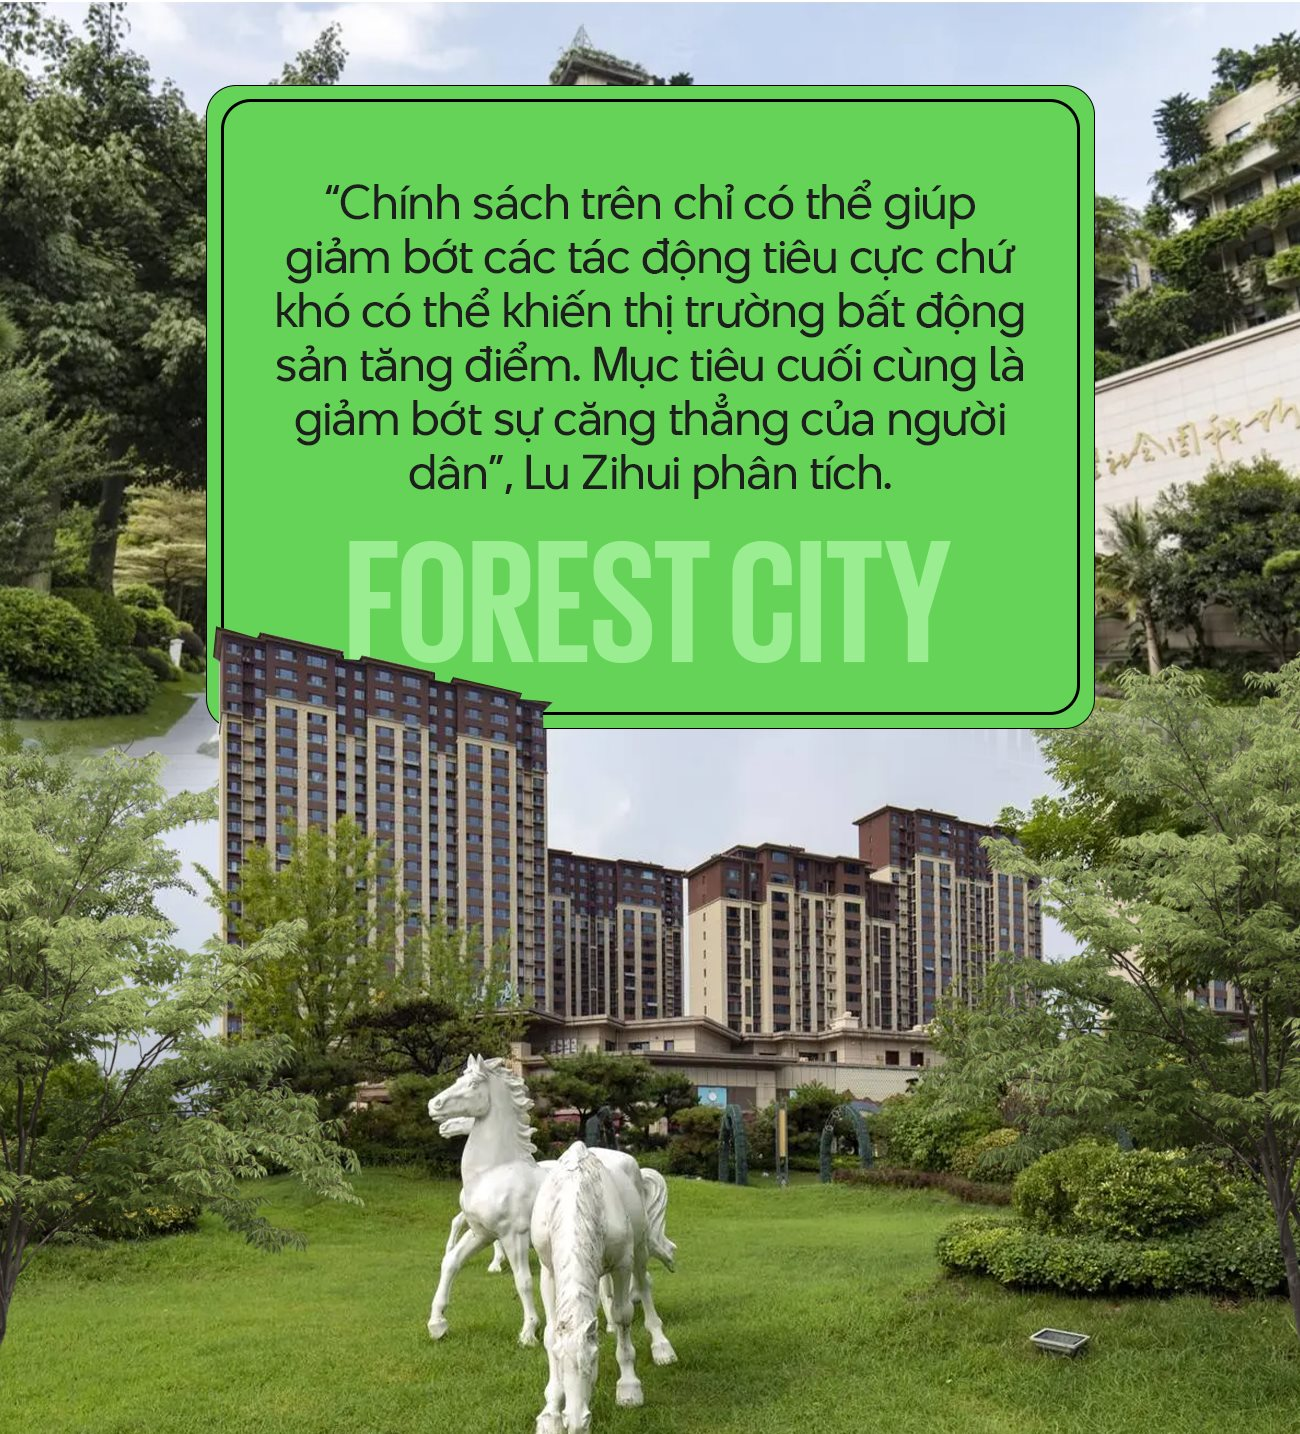 Forest City - ‘Cạm bẫy 5 sao’ của Country Garden: Nhà mua 6 năm chưa có giấy tờ, chủ căn hộ không thể bán hay cho thuê vì chẳng ai dám đến - Ảnh 7.